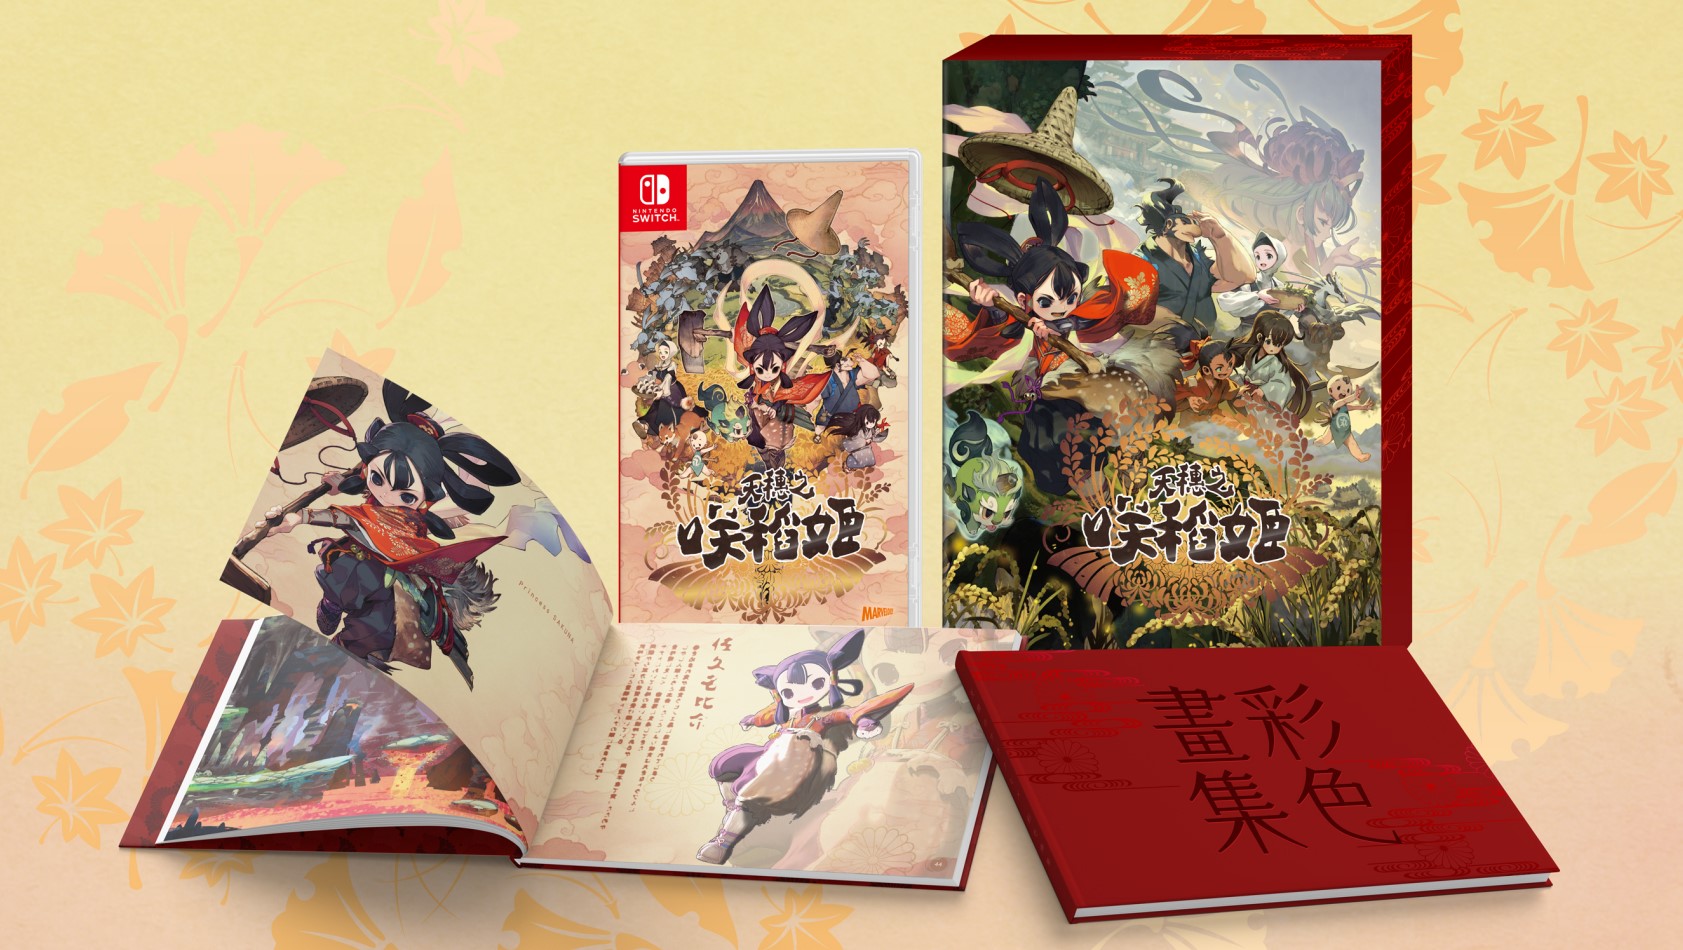 种田战风动做RPG《天穗之咲稻姬》将于11月12日支卖